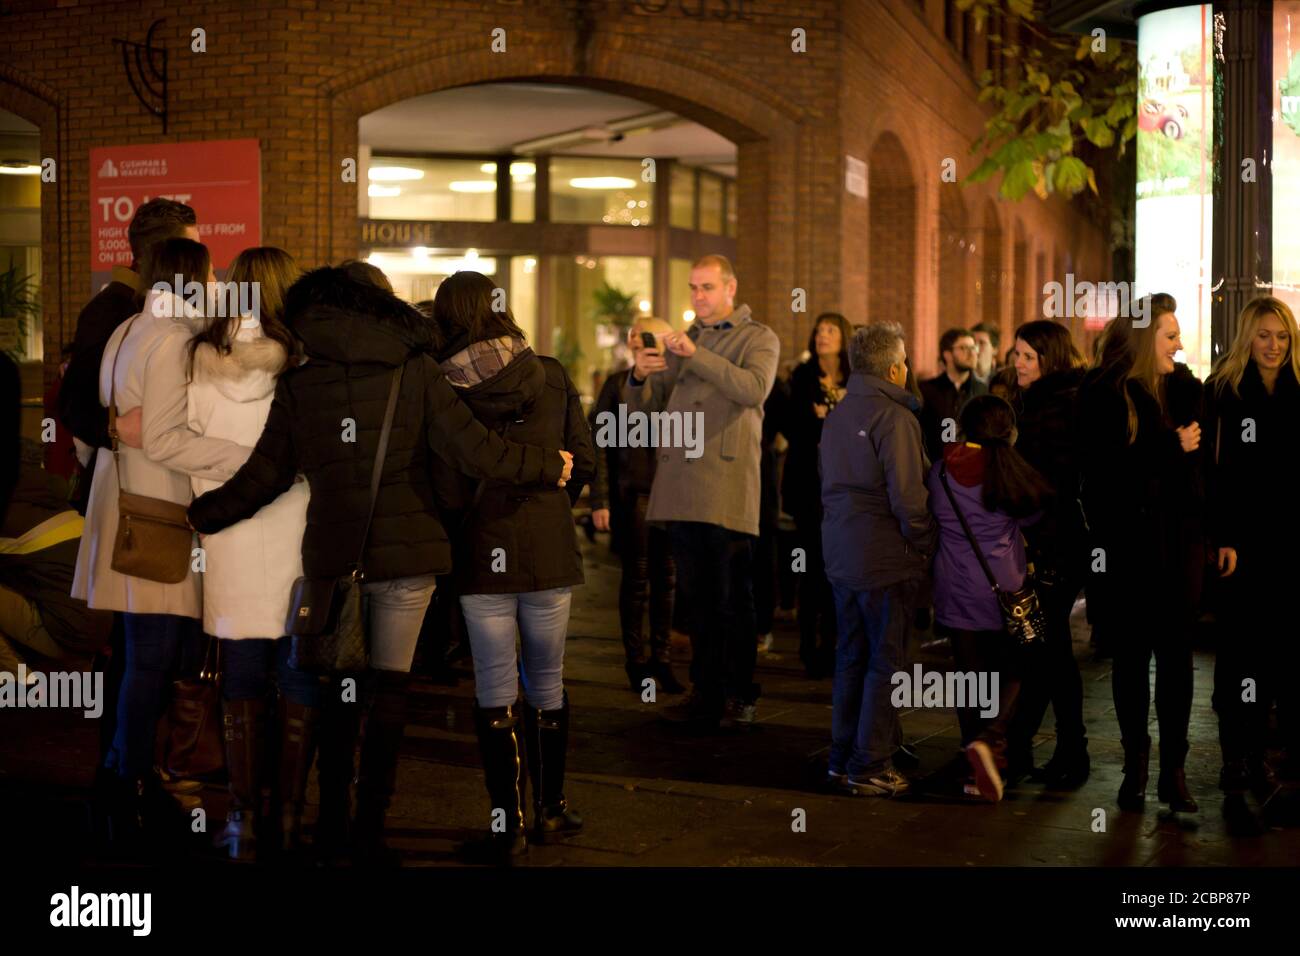 Menschen posierten für ein Gruppenfoto in einer belebten Straßenszene, Stadt und Nacht, Einkaufen, Ausgehen, Freunde, Familie, jovial, glückliche Menschen, Straßenfotografie Stockfoto